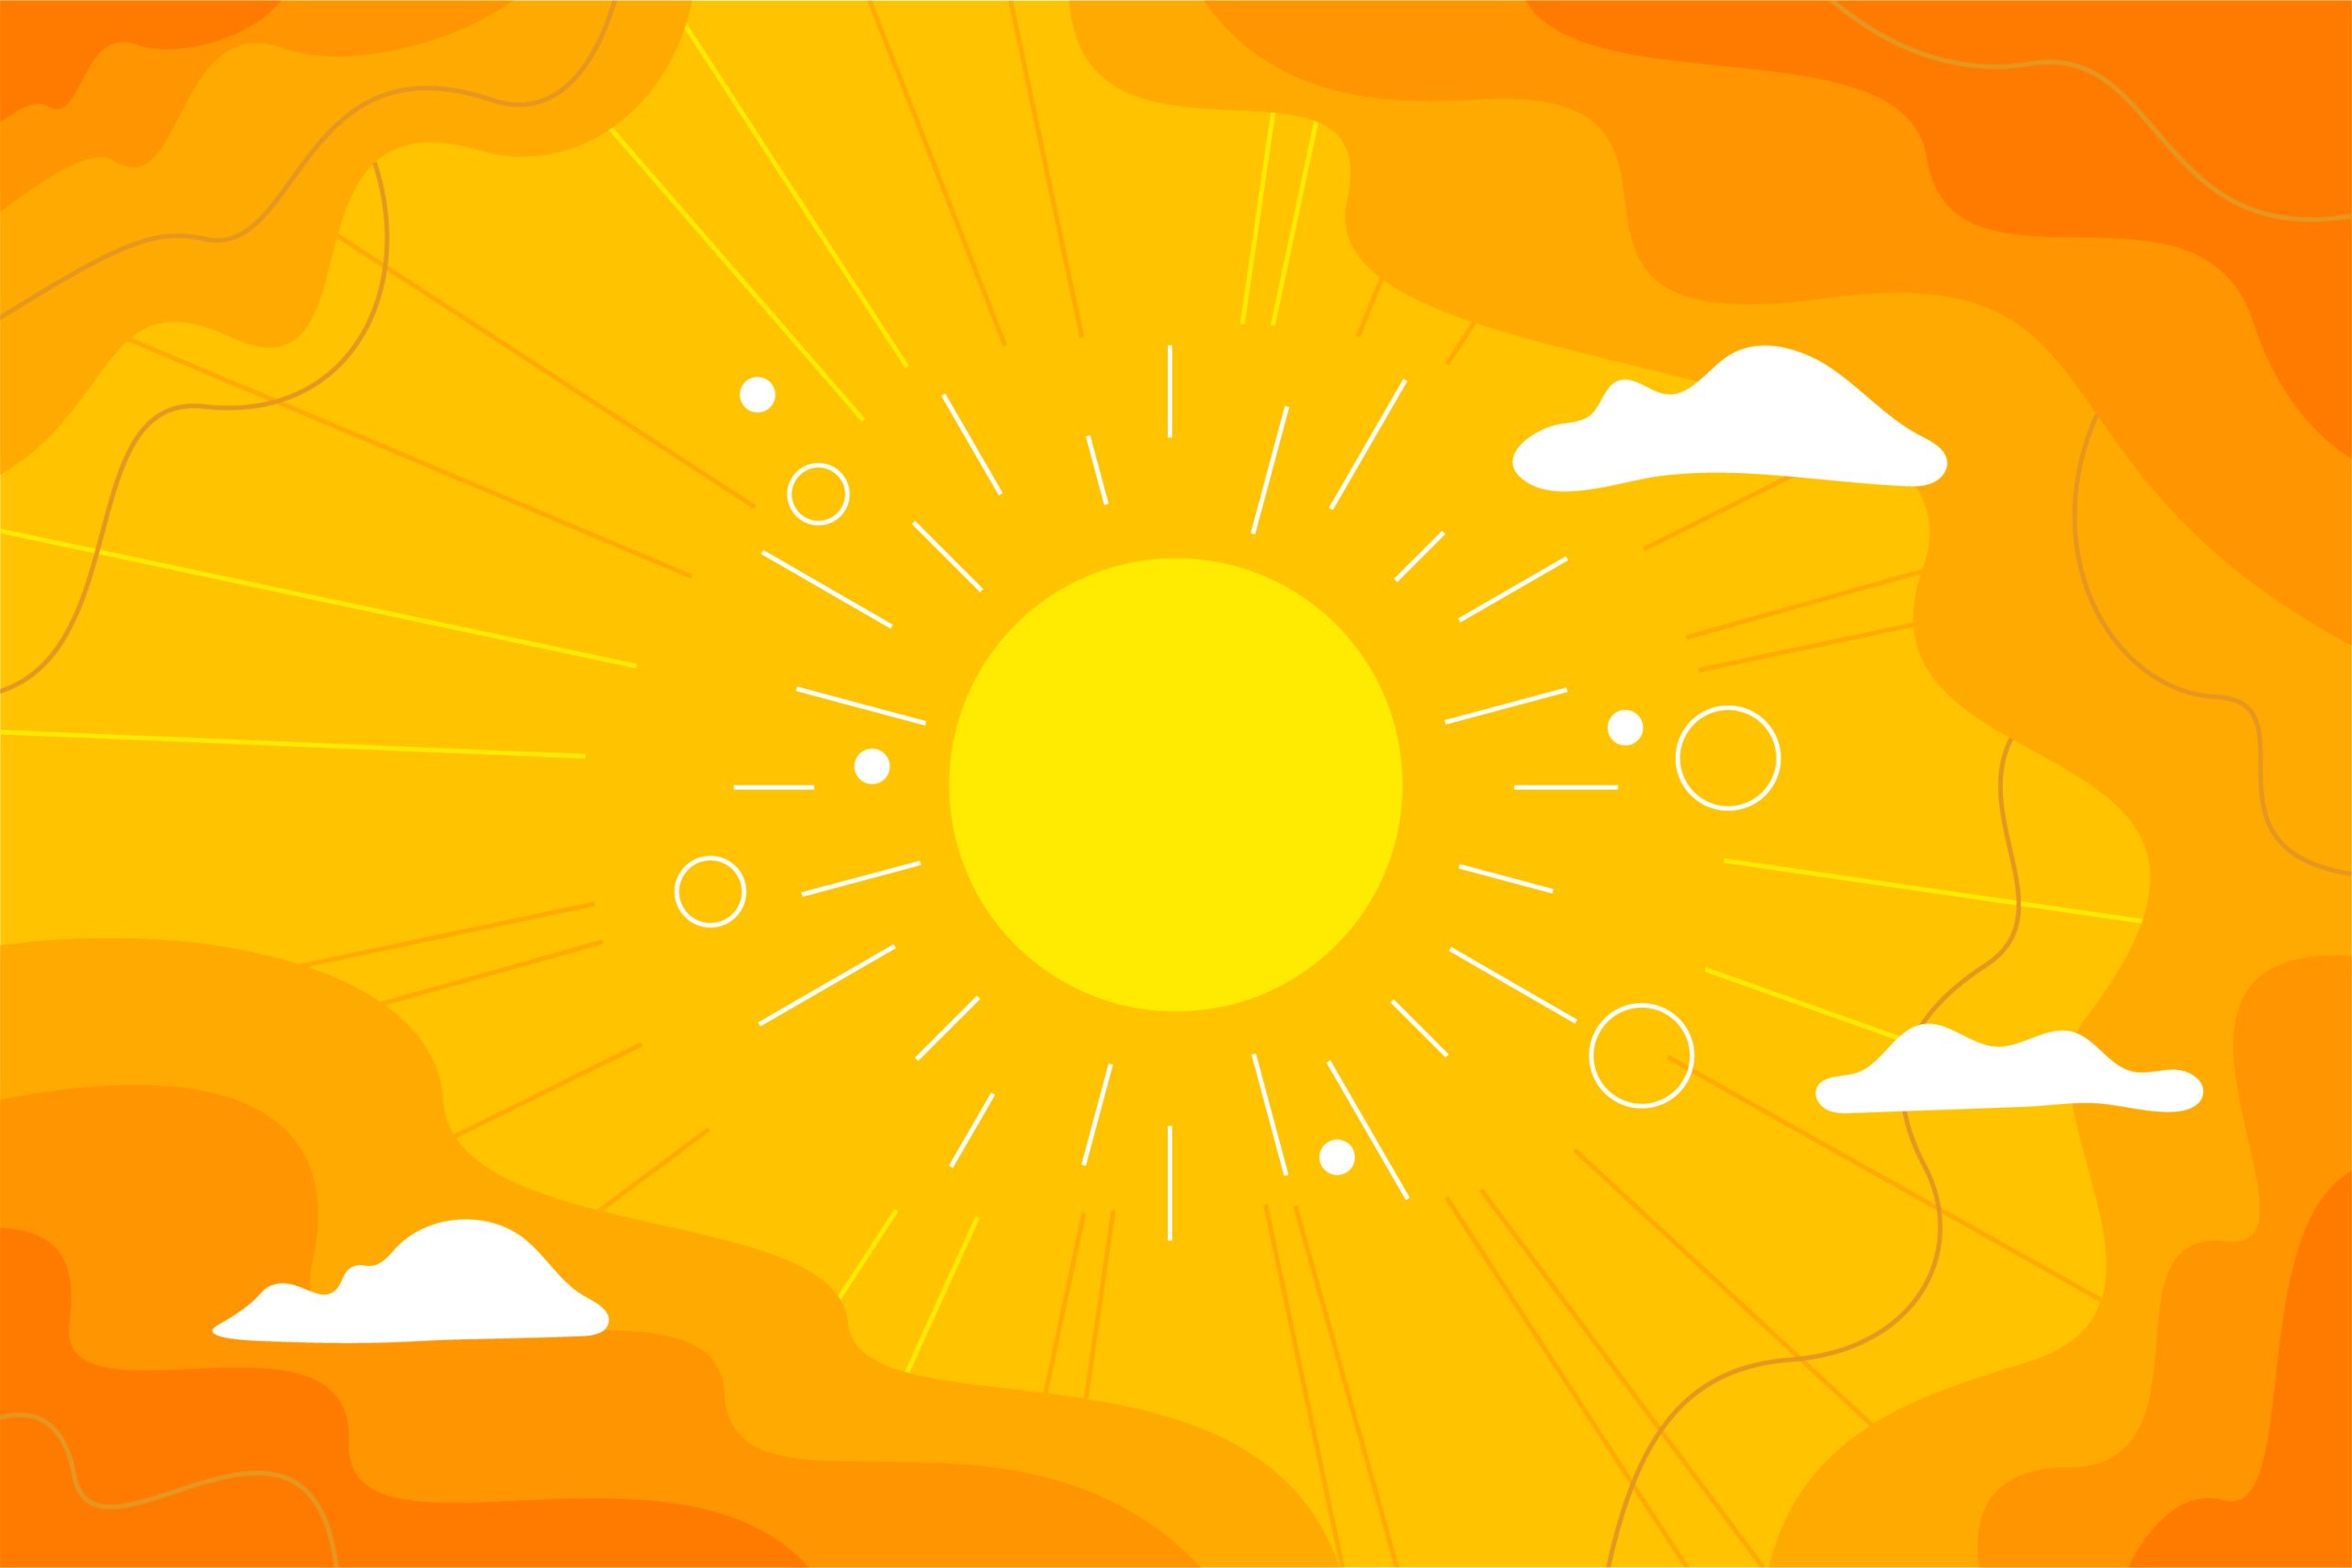 Hot Sun illustration